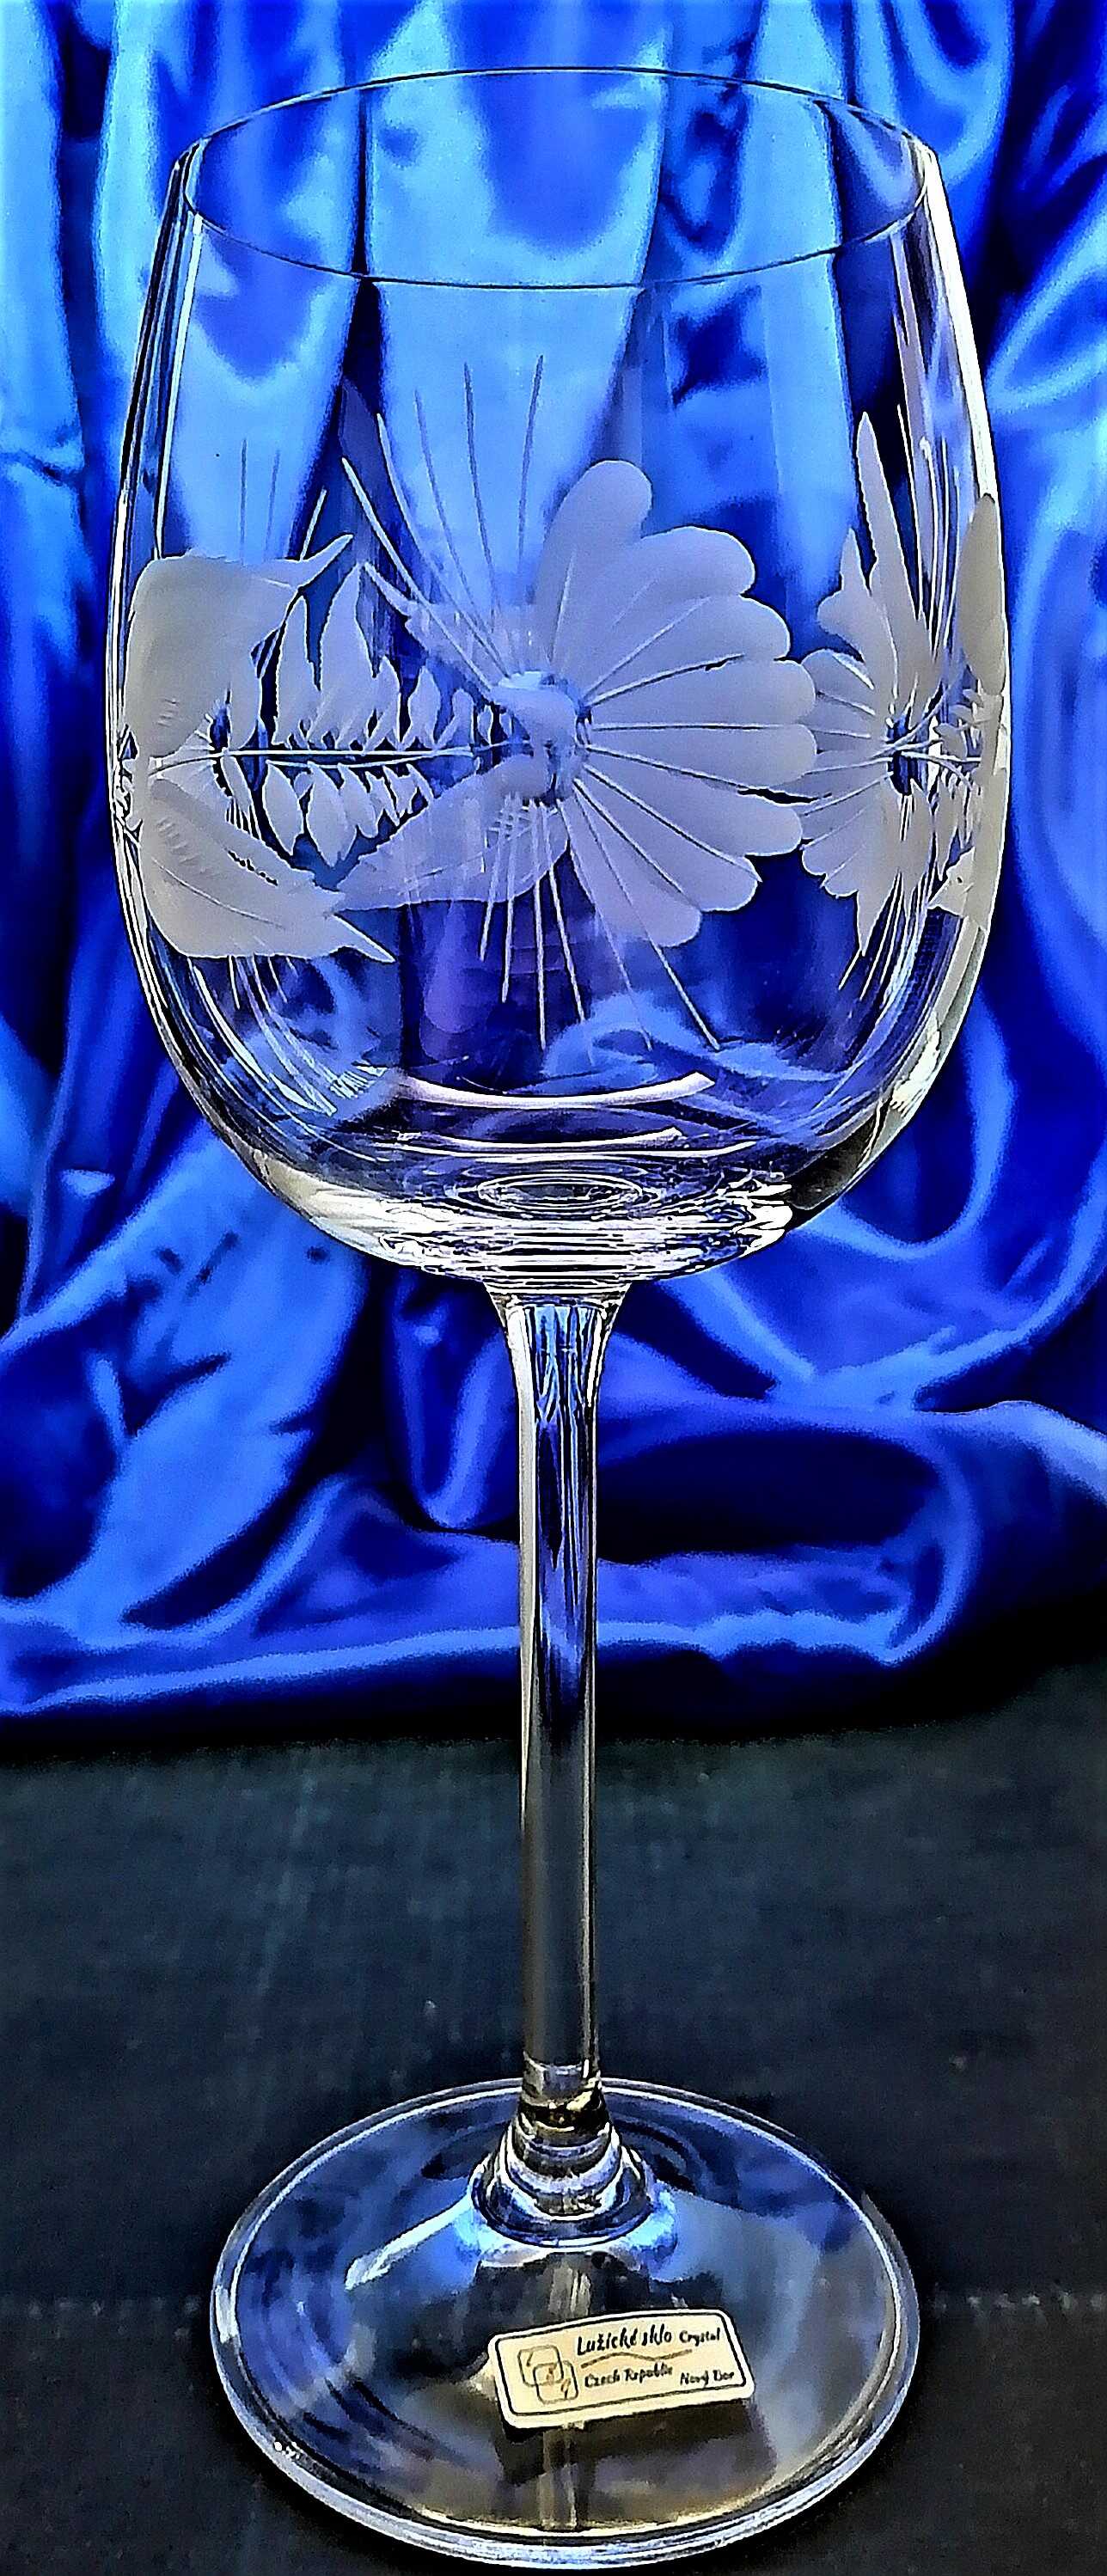 LsG-Crystal Skleničky na bílé víno ručně ryté broušené dekor Šípek dárkové balení satén Erika-65882 260 ml 2 Ks.